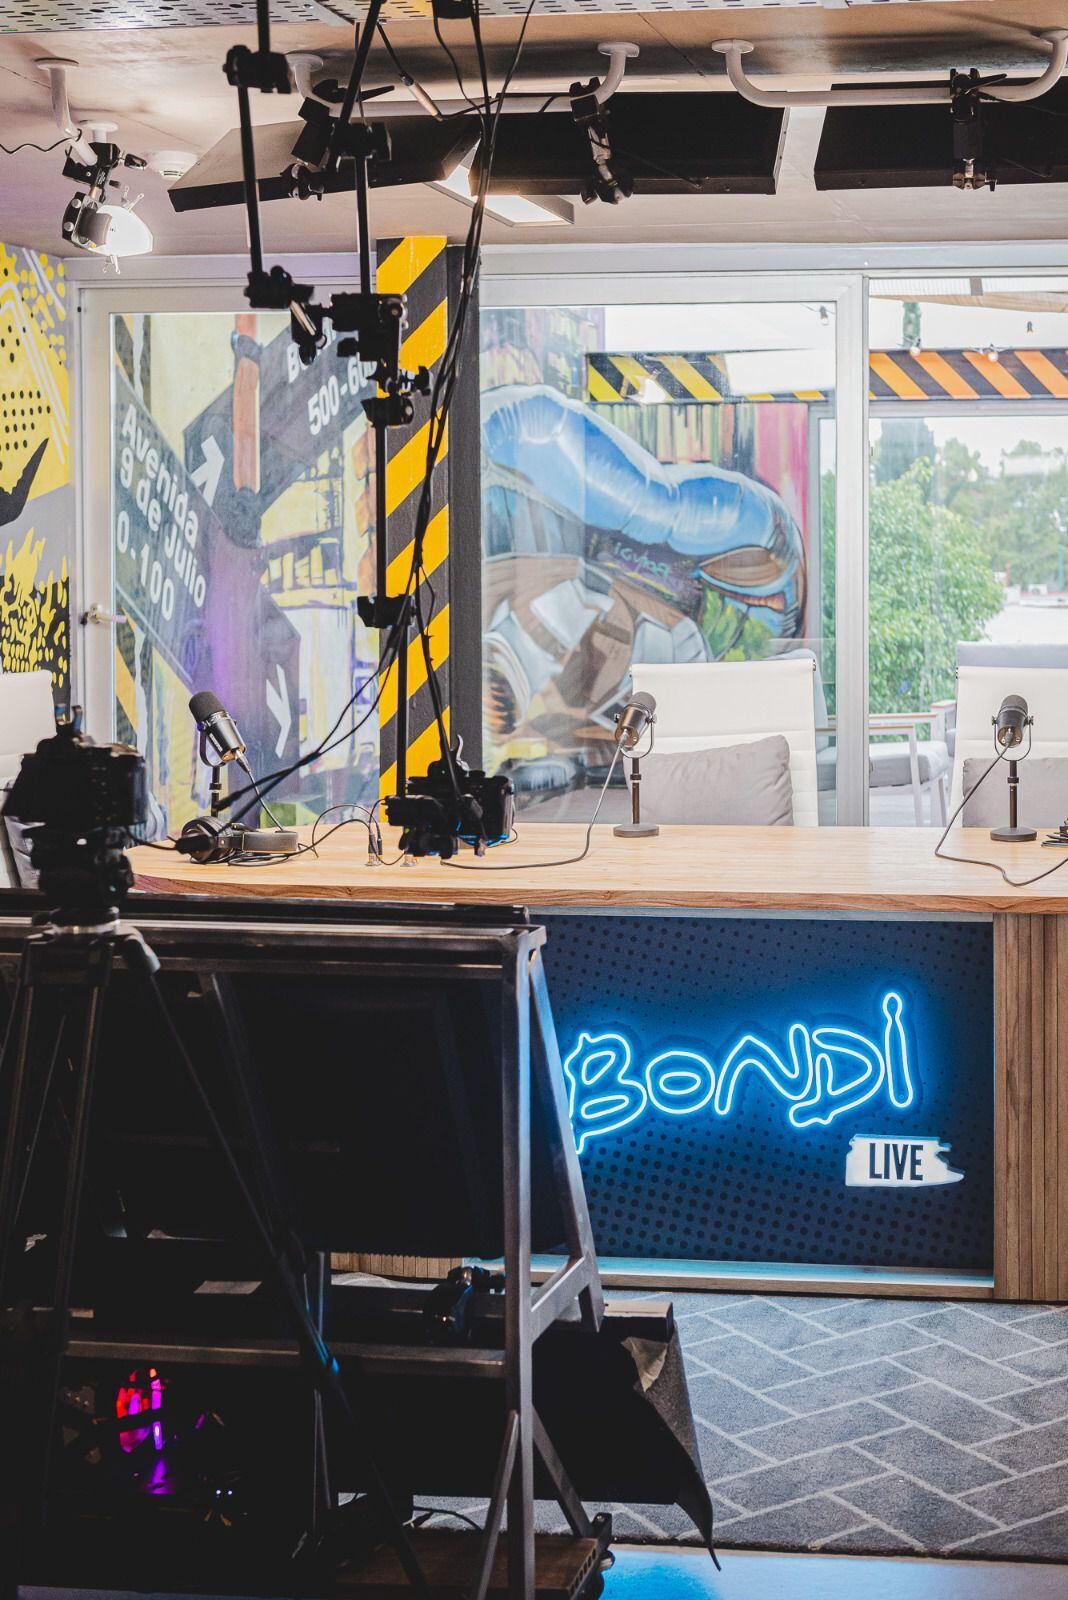 Este próximo lunes 29 de abril comenzará Bondi, el nuevo canal de streaming de Argentina